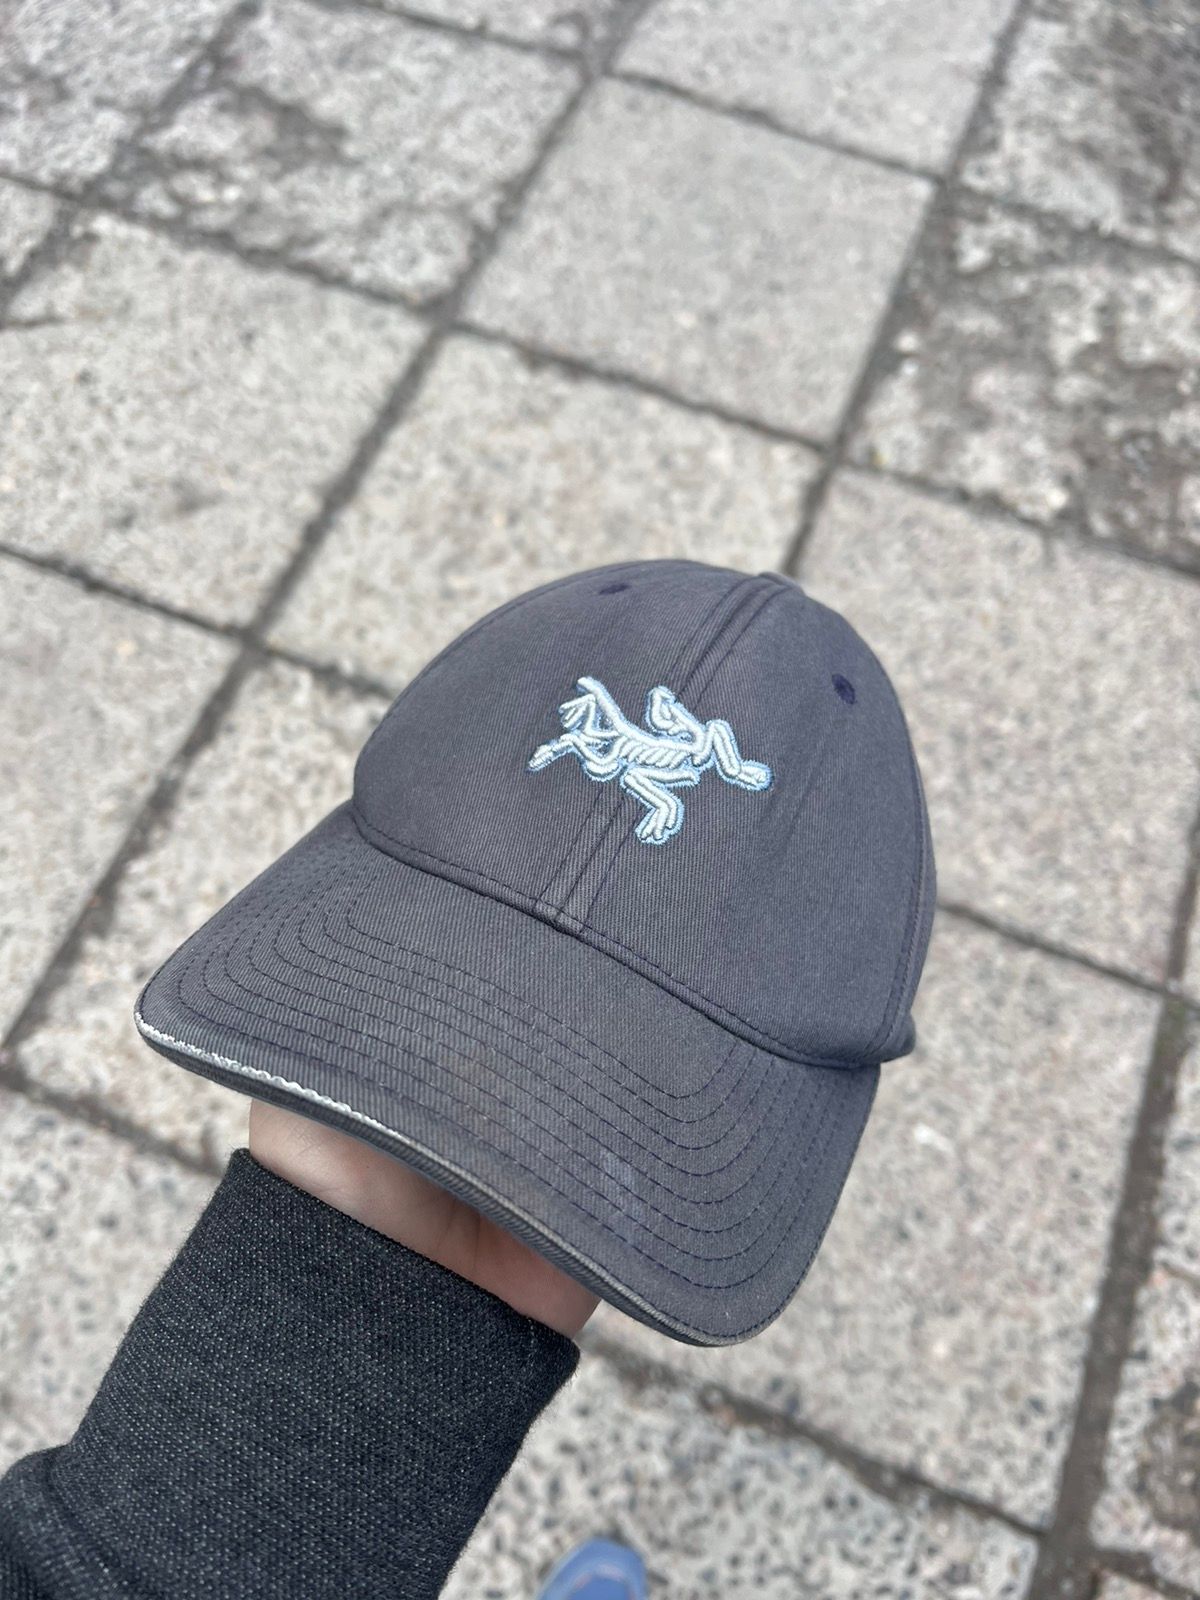 Arc'Teryx Arcteryx cap hat vintage flexfit logo